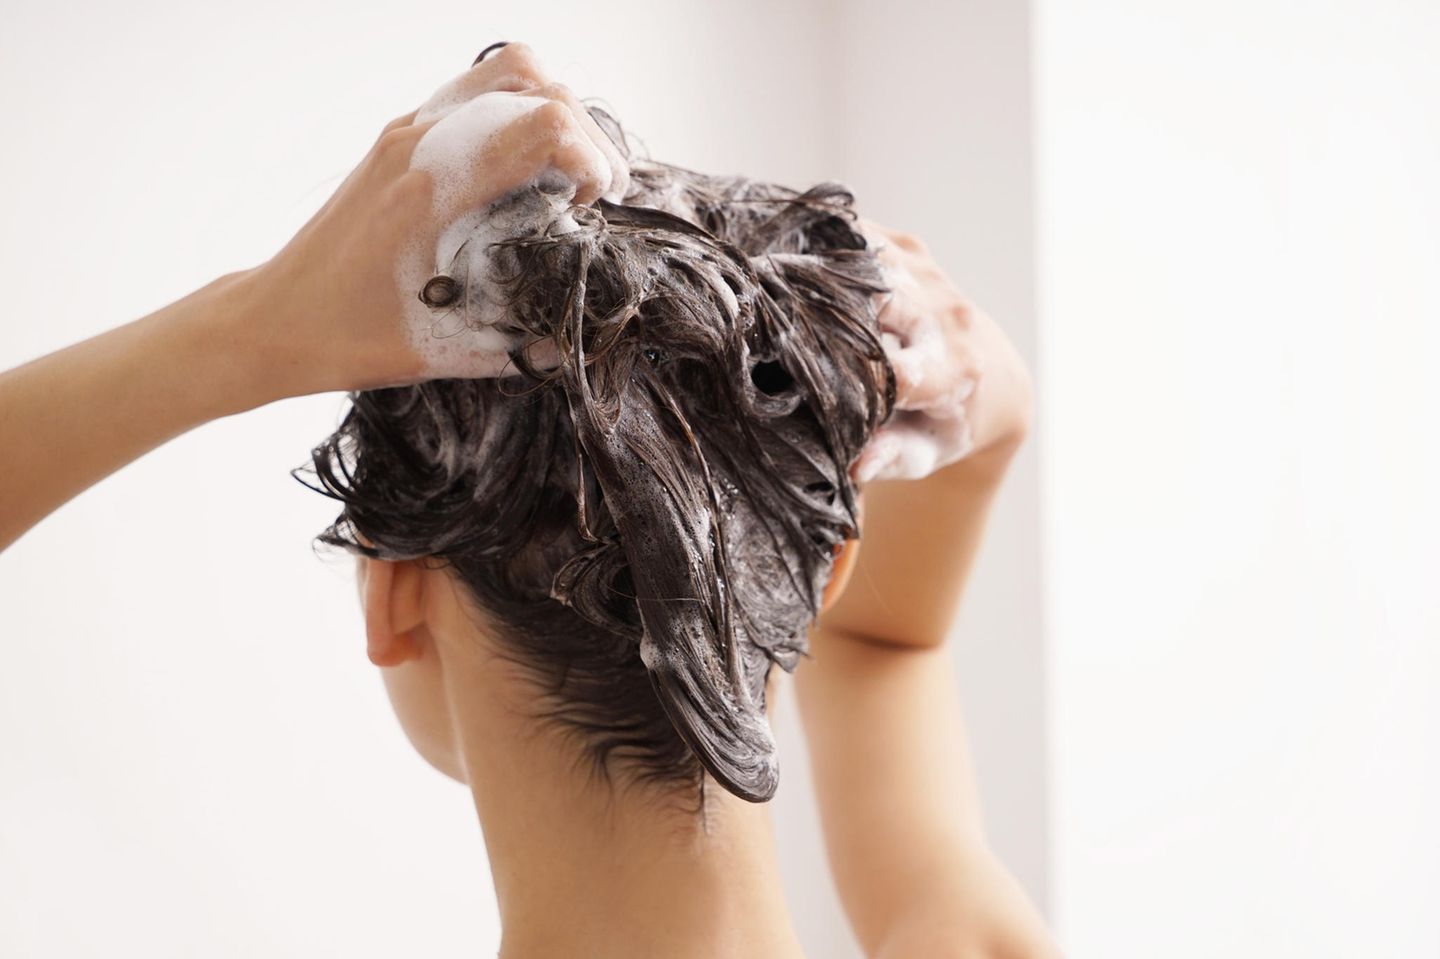 brünette-frau-wäscht-haare-mit-shampoo-gegen-fettige-haare